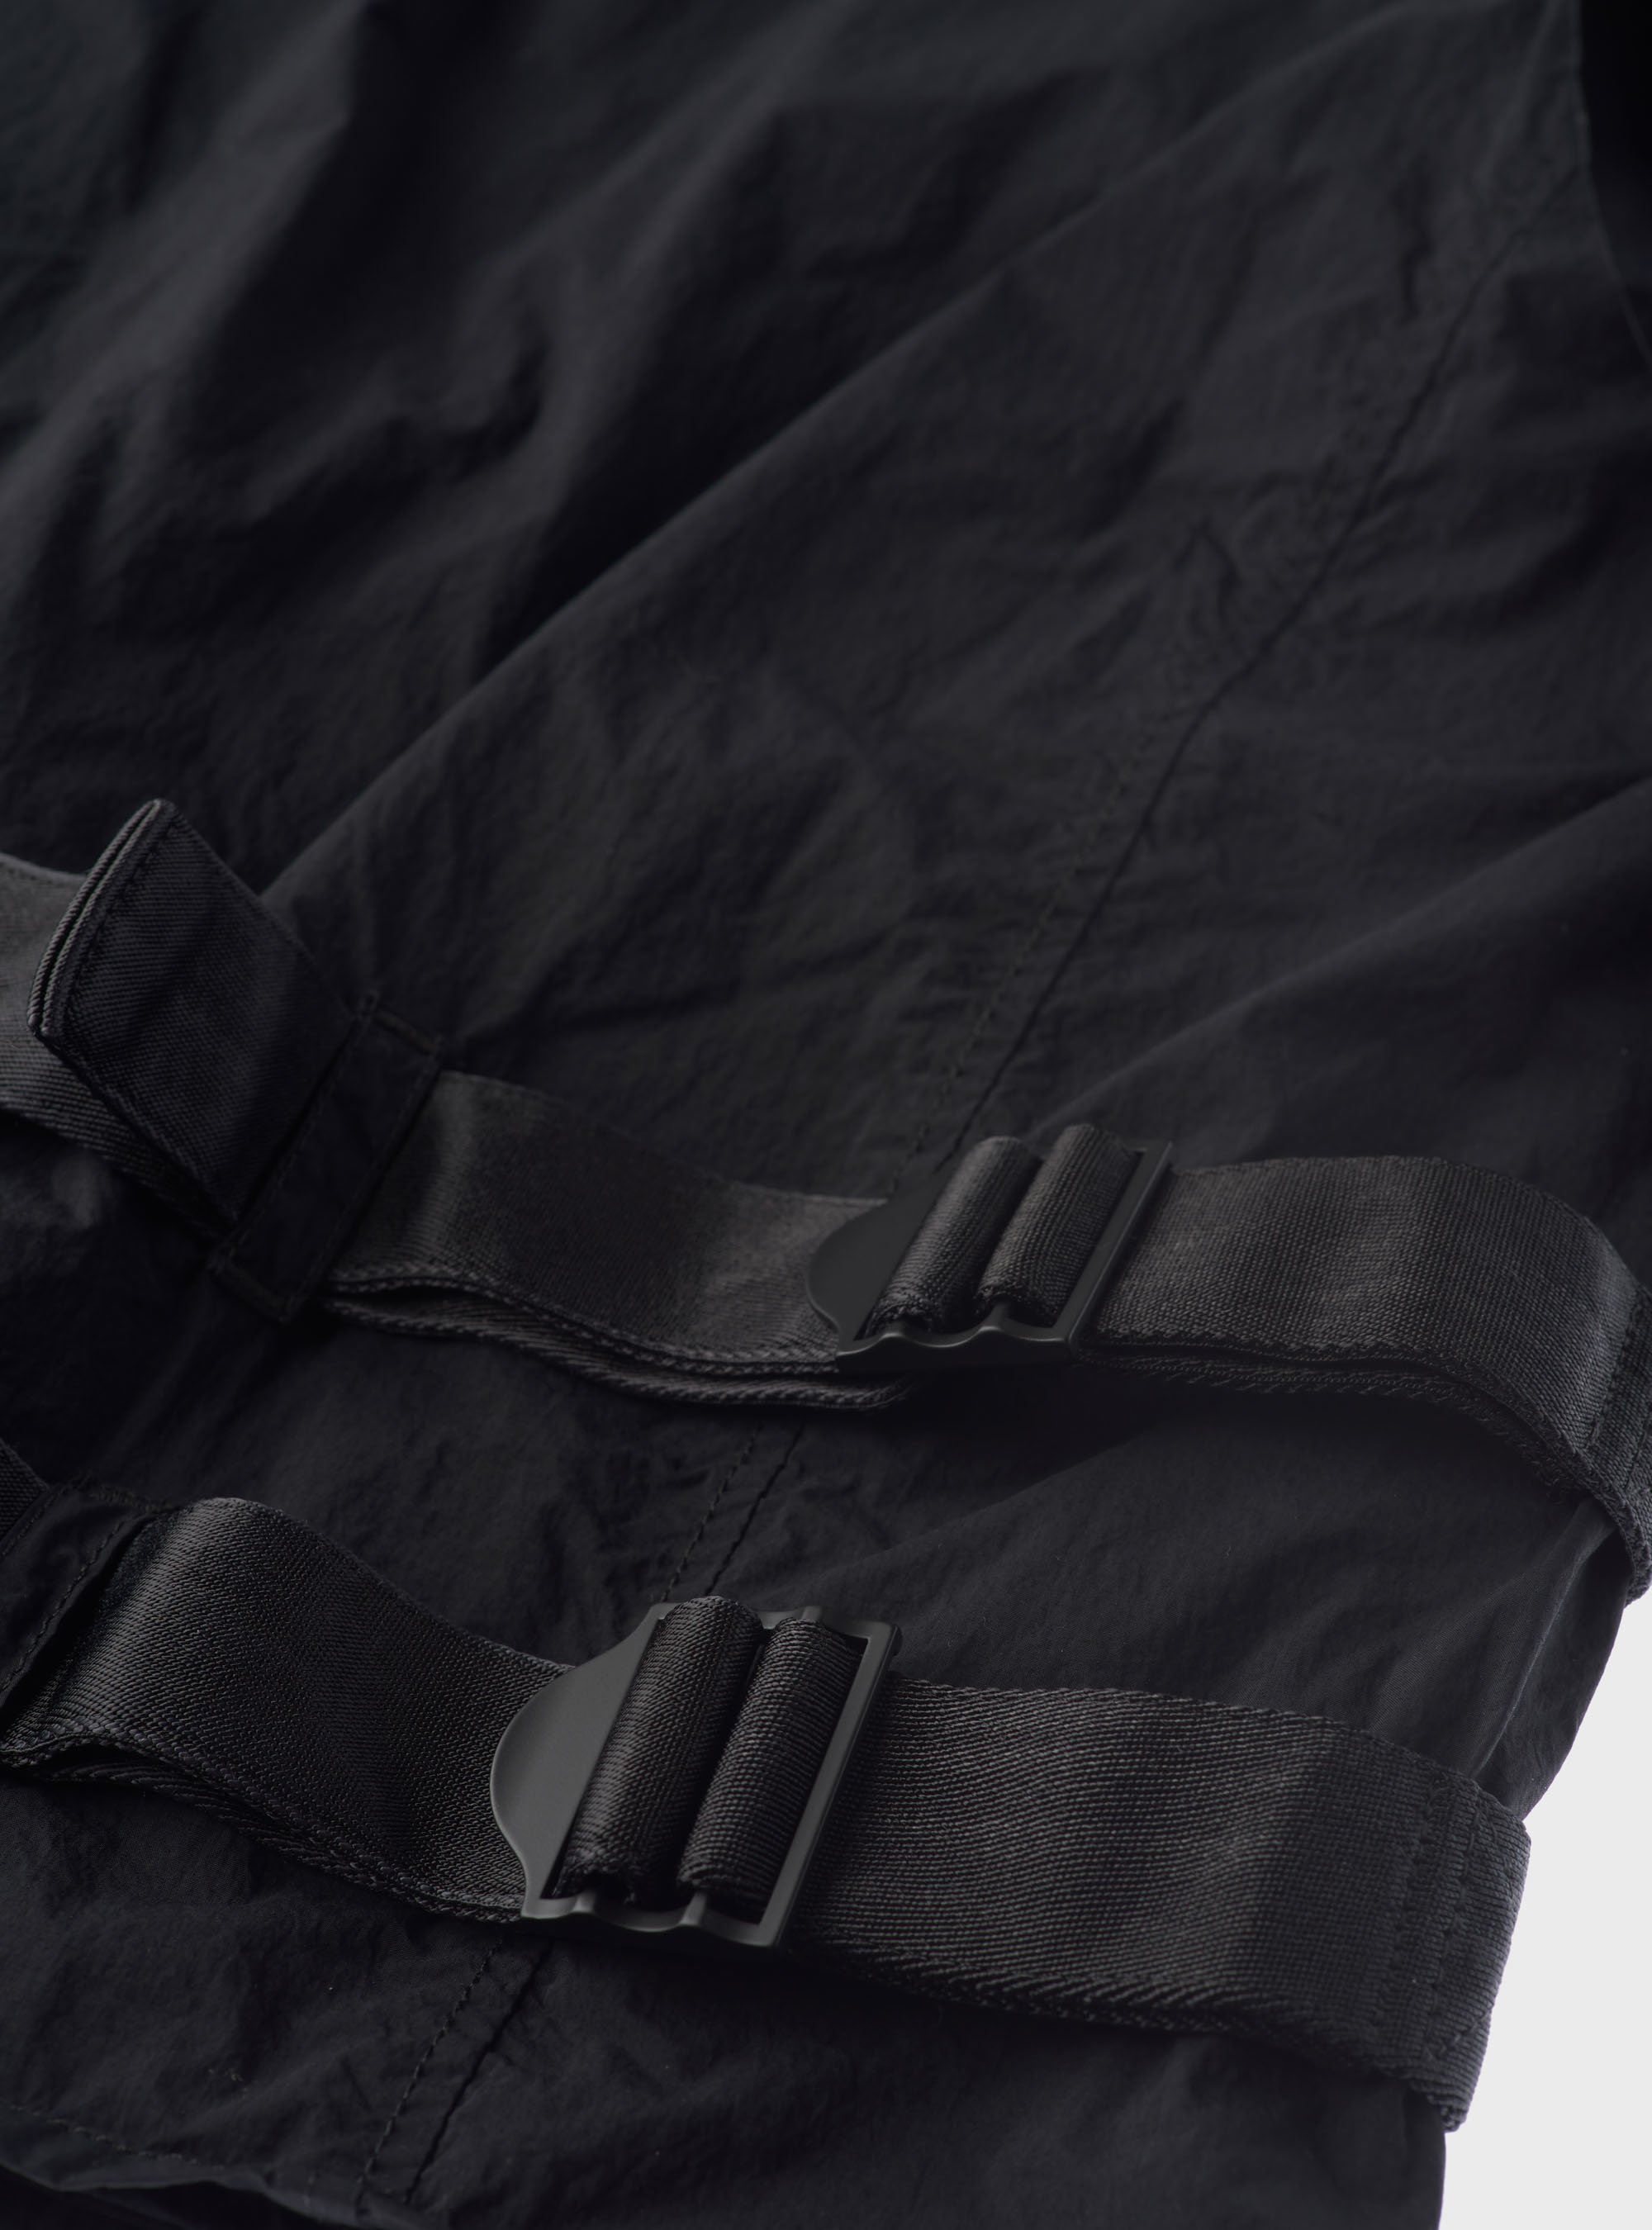 Ten C 'Mid Layer Vest' (Charcoal) – C'H'C'M